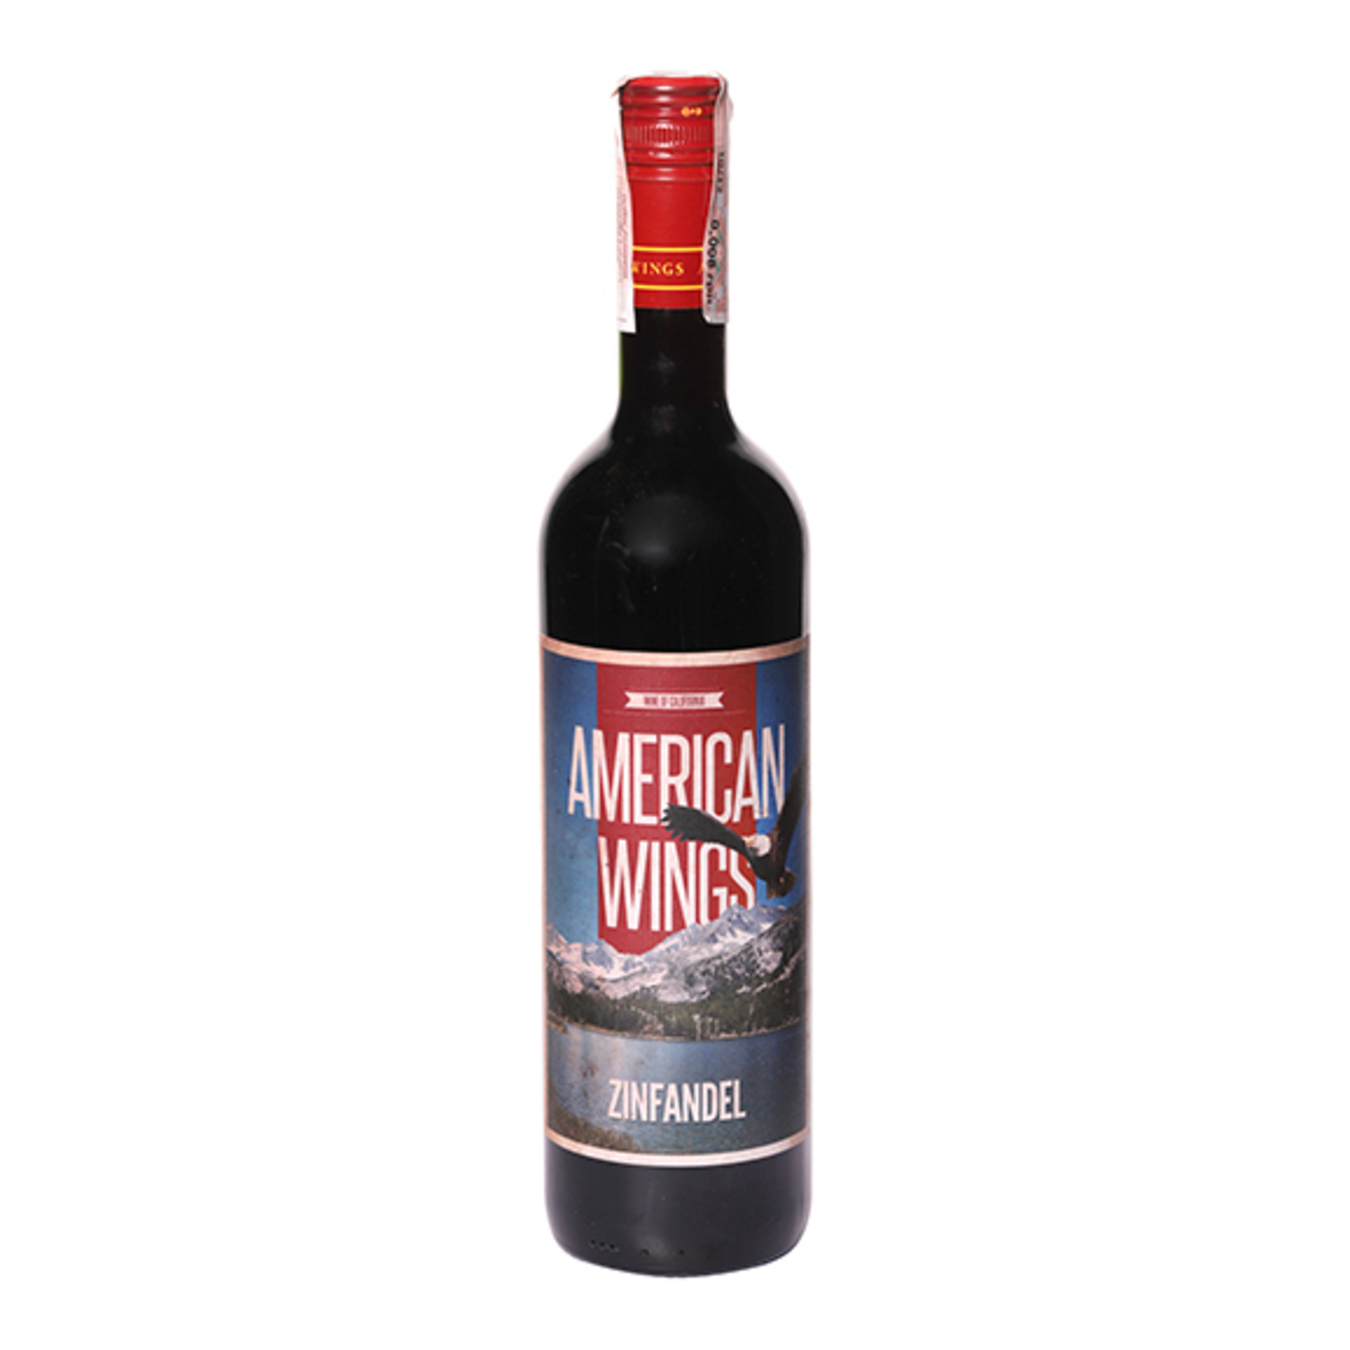 Wine American Wings Zinfandel Red Semi-Dry 13,5% 0,75l